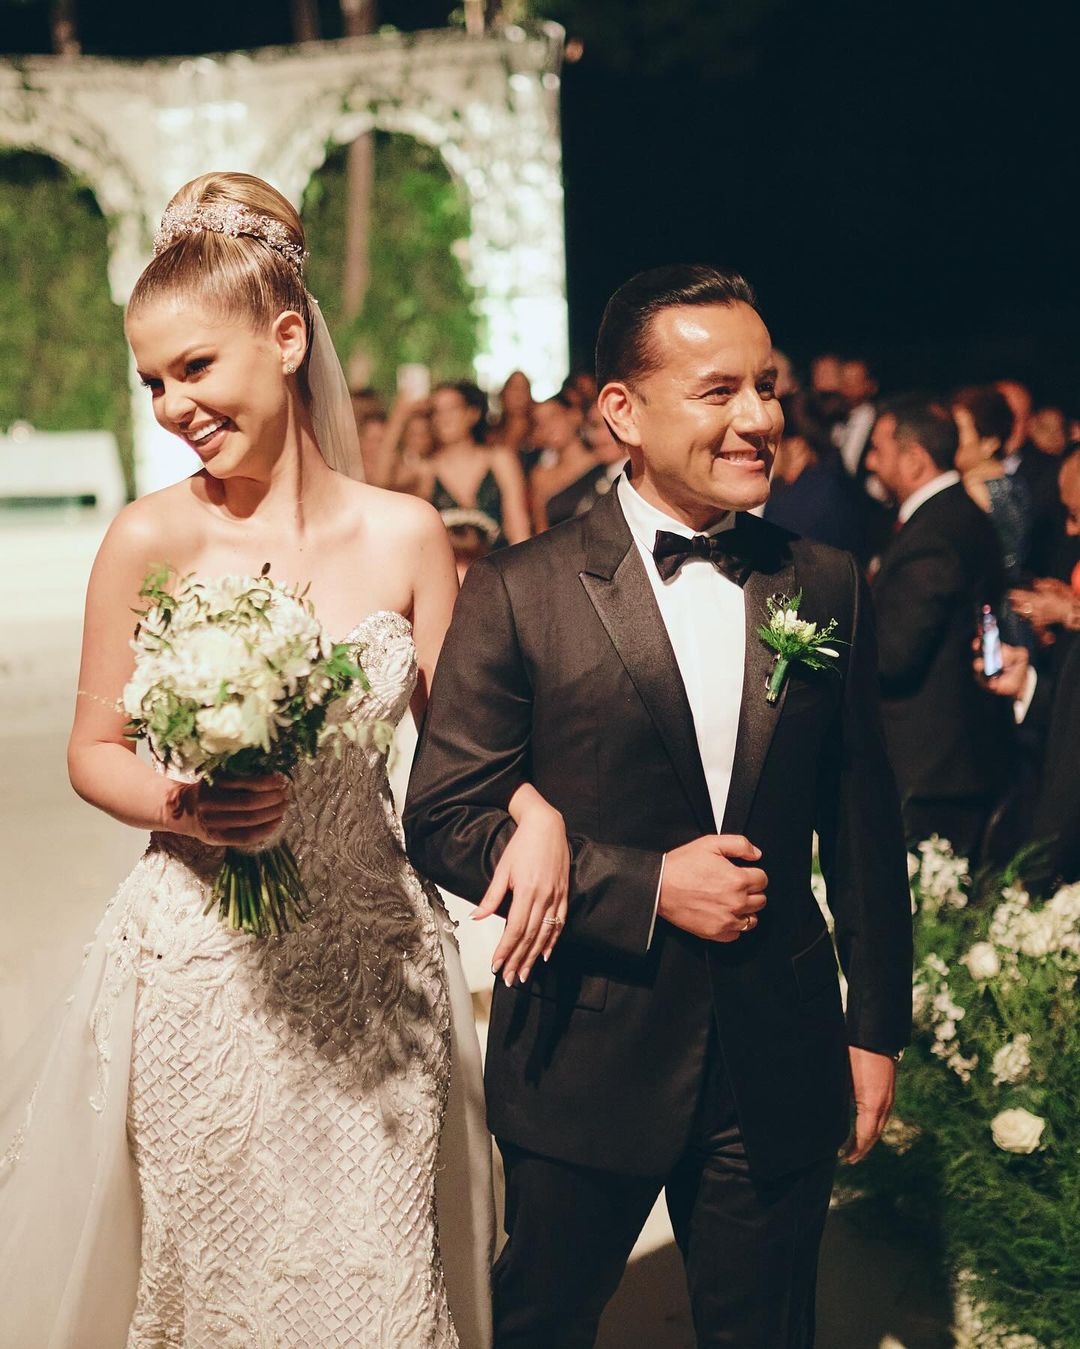 La boda de Brunella Horna y Richard Acuña se realizó en La Molina / Instagram